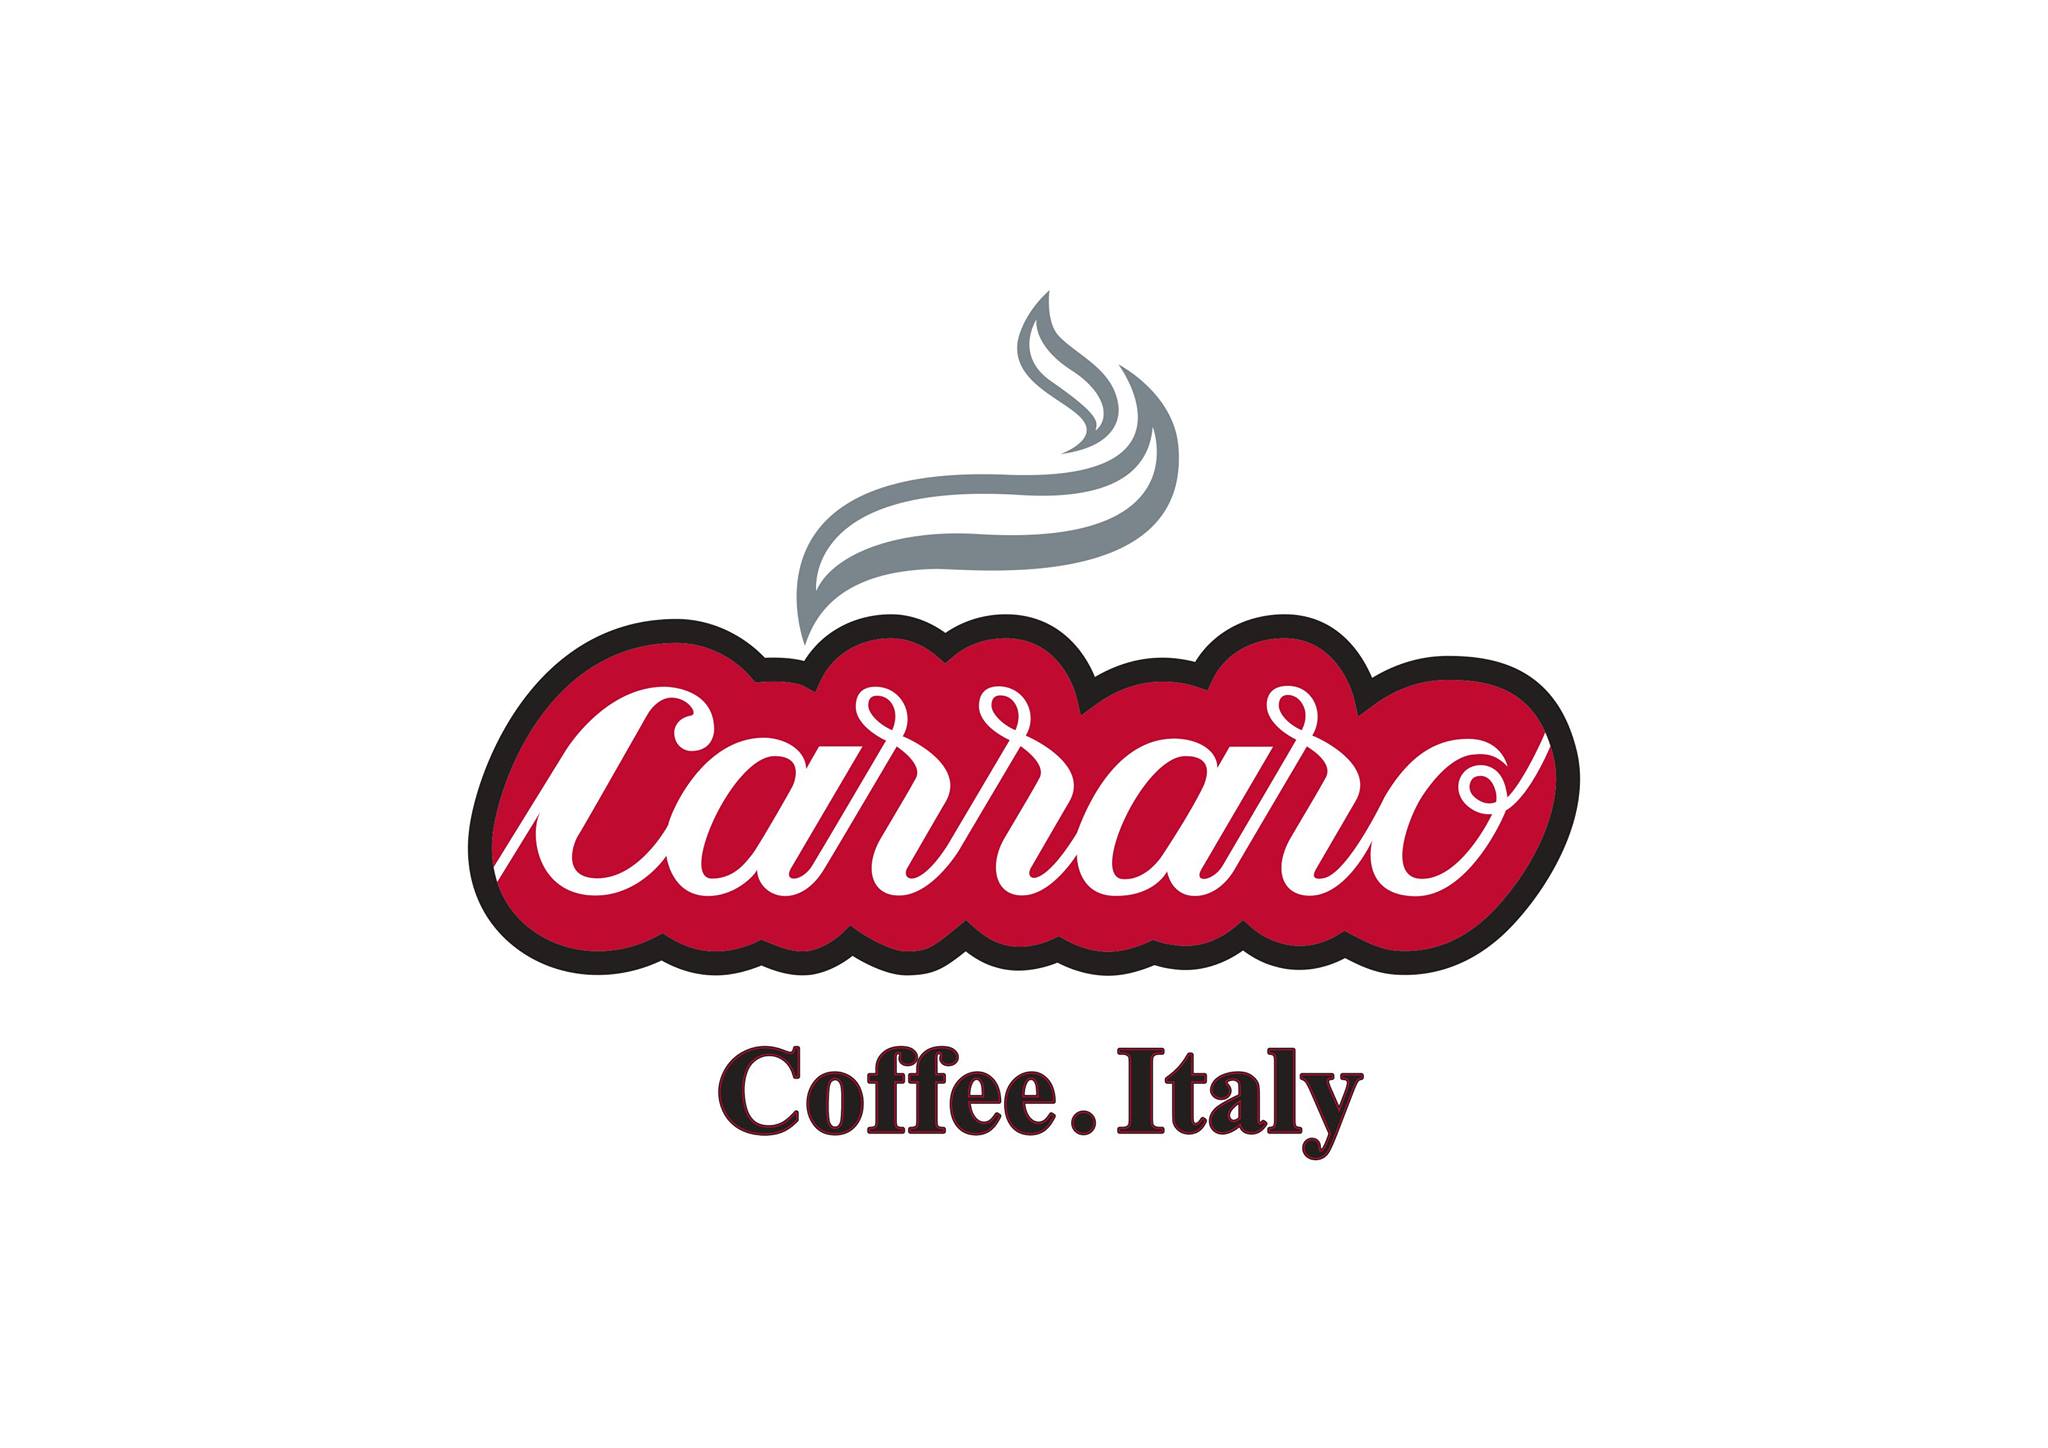 Carraro Coffee Logo